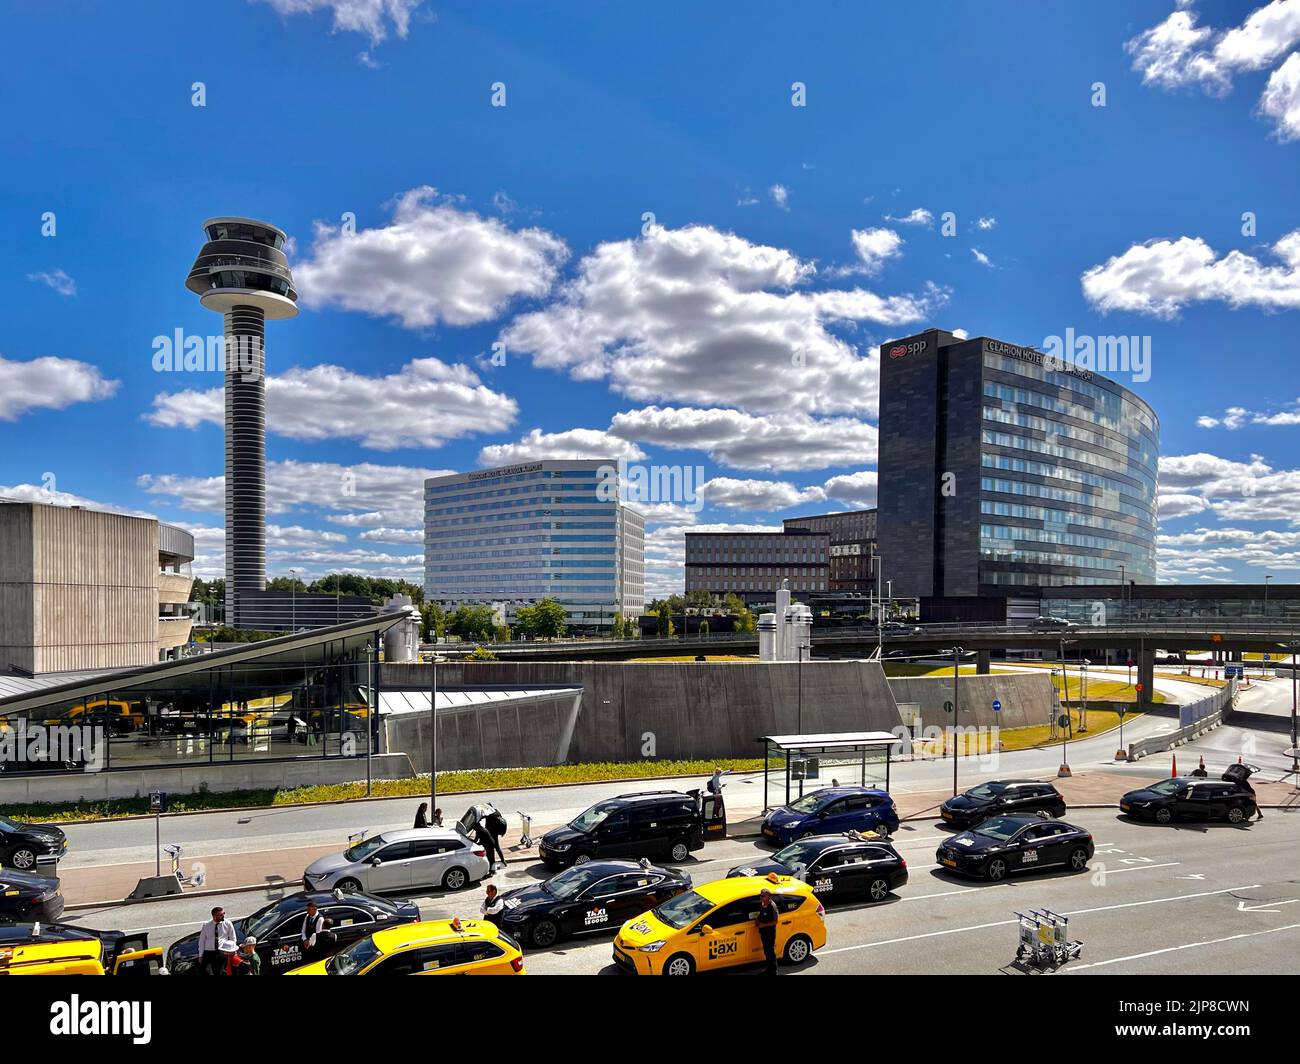 Aéroport de Stockholm Arlanda l'aéroport de Stockholm Arlanda (IATA: ARN, OACI: ESSA) est un aéroport international situé dans la municipalité de Sigtuna en Suède, Banque D'Images